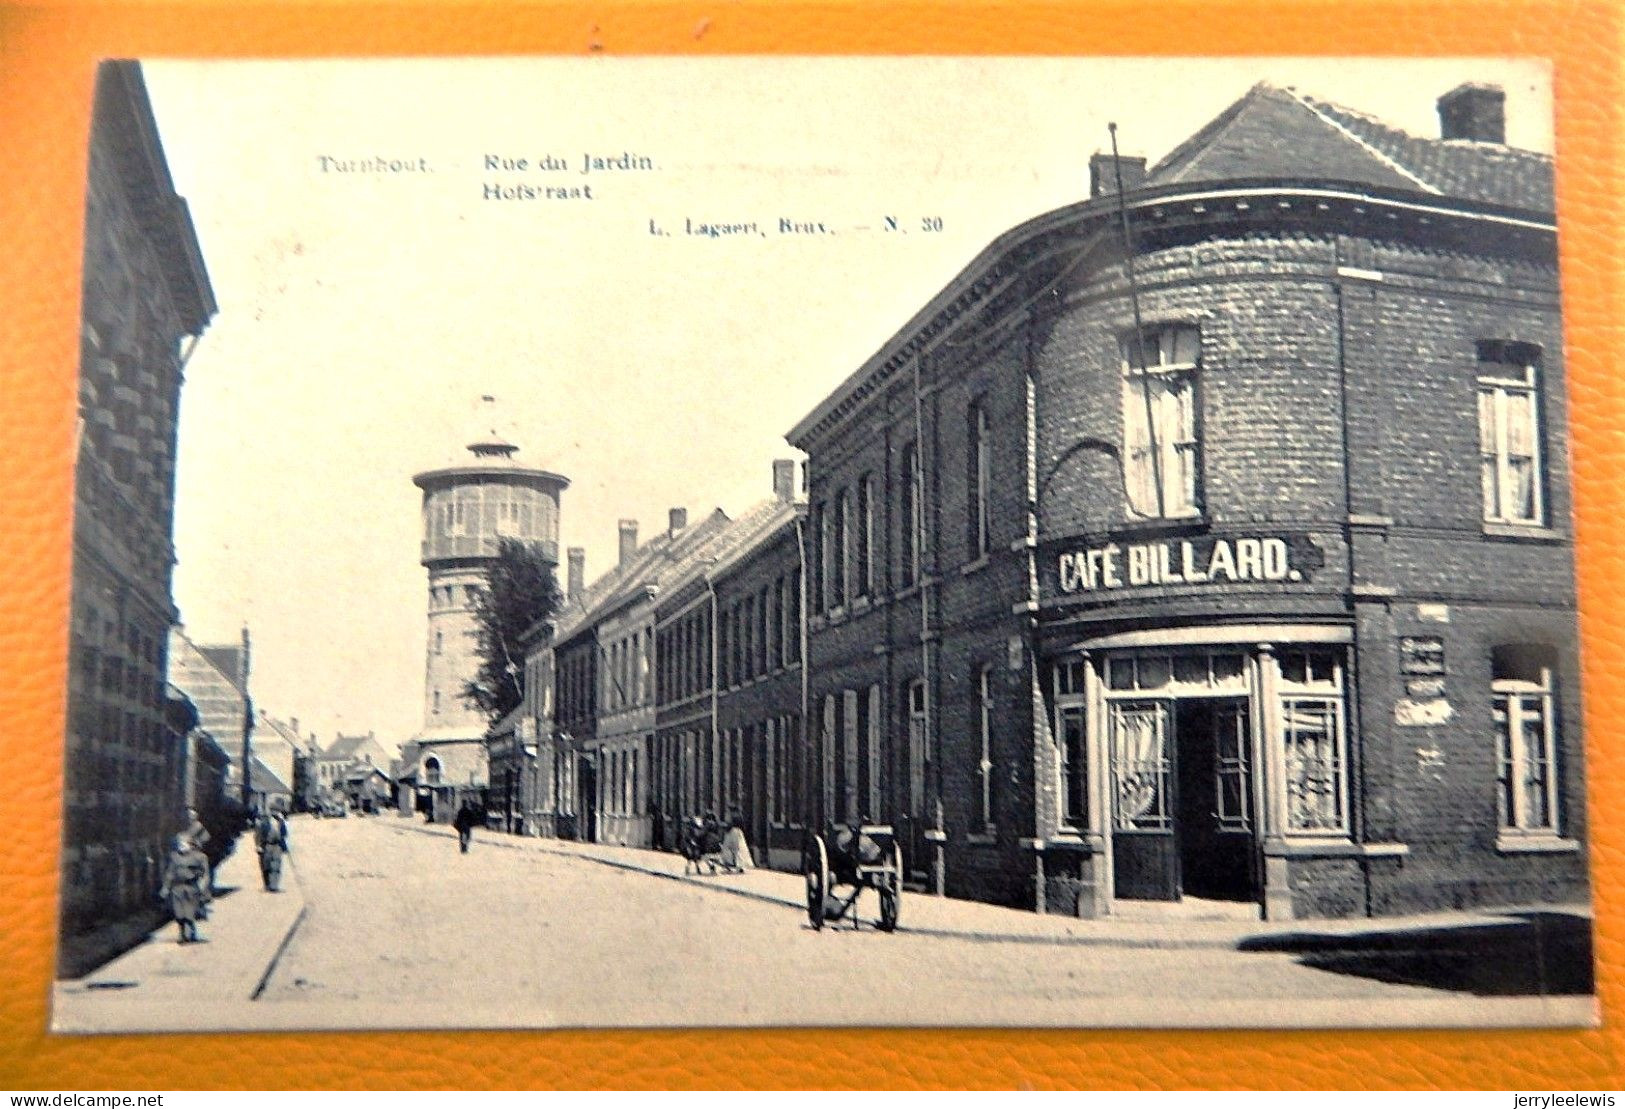 TURNHOUT  -  Hofstraat  -  Rue Du Jardin  -  1909 - Turnhout